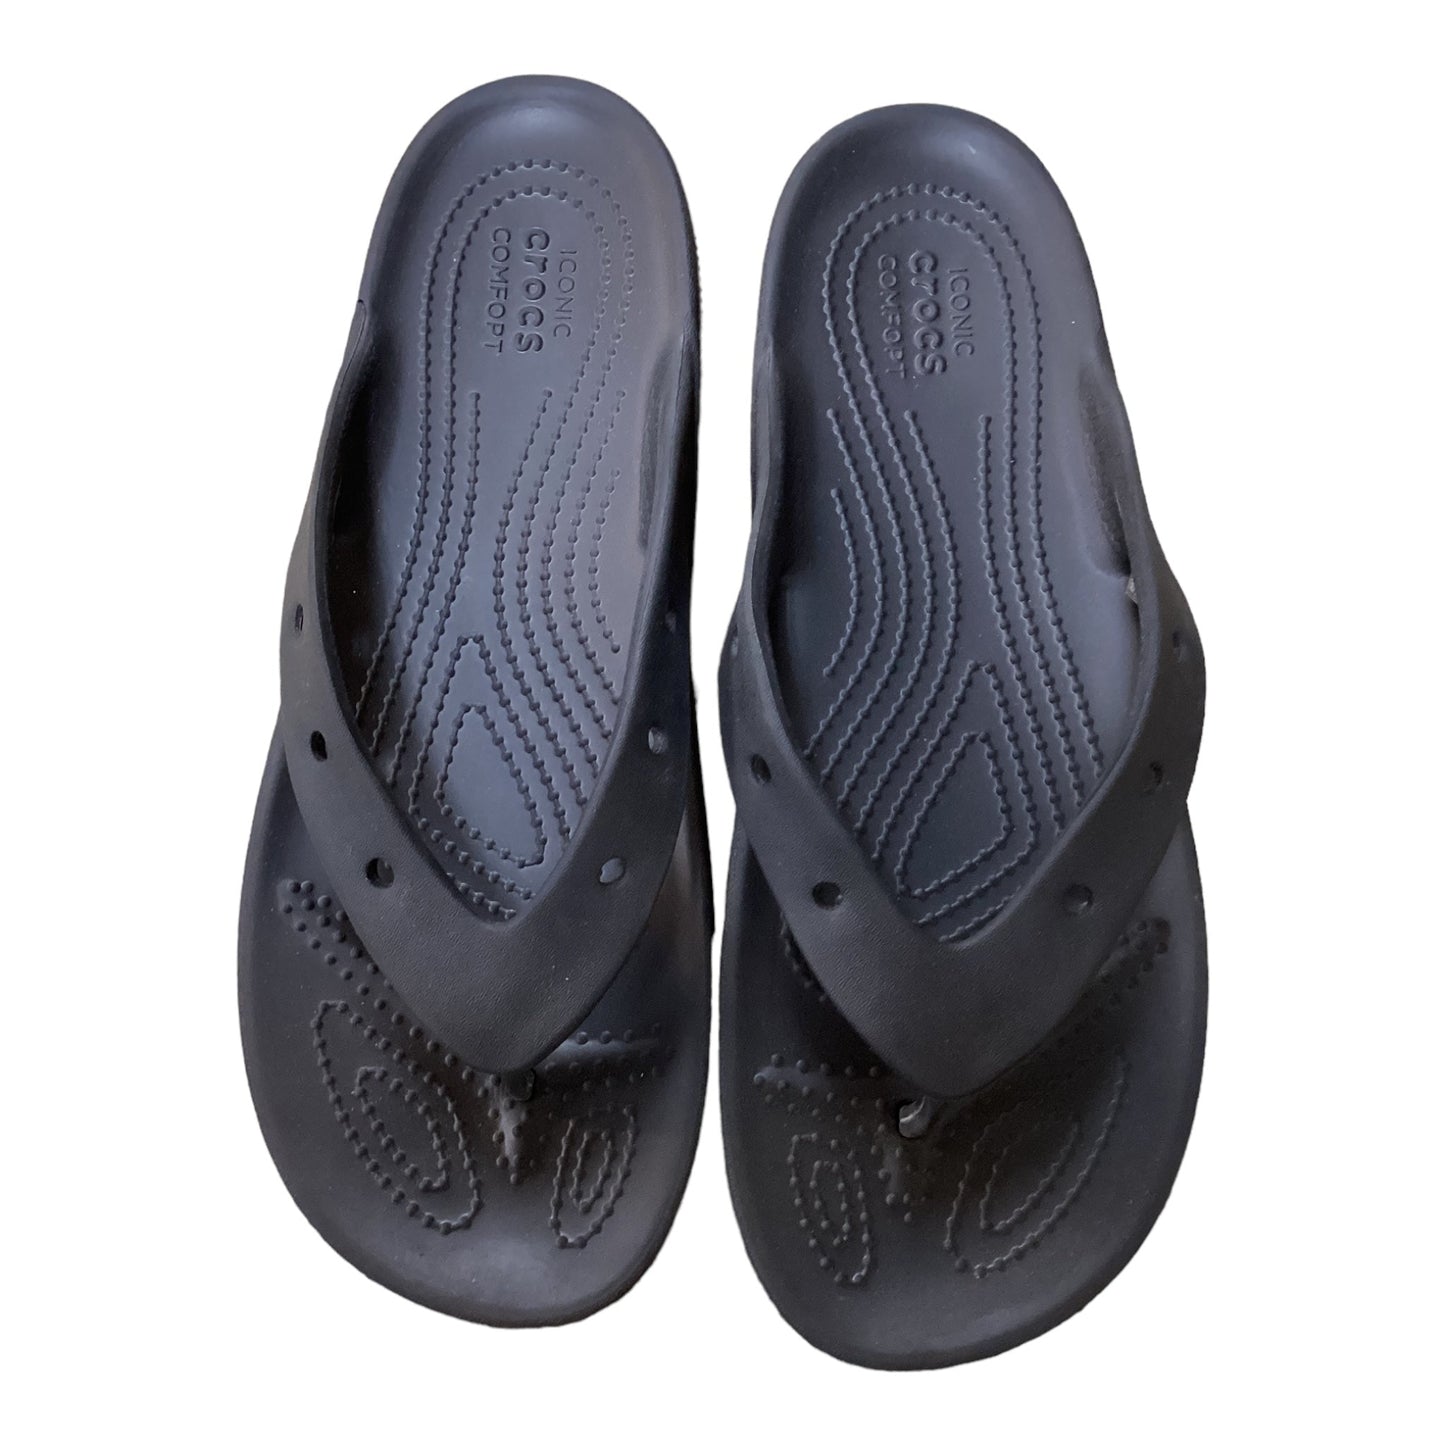 Black Sandals Flats Crocs, Size 10